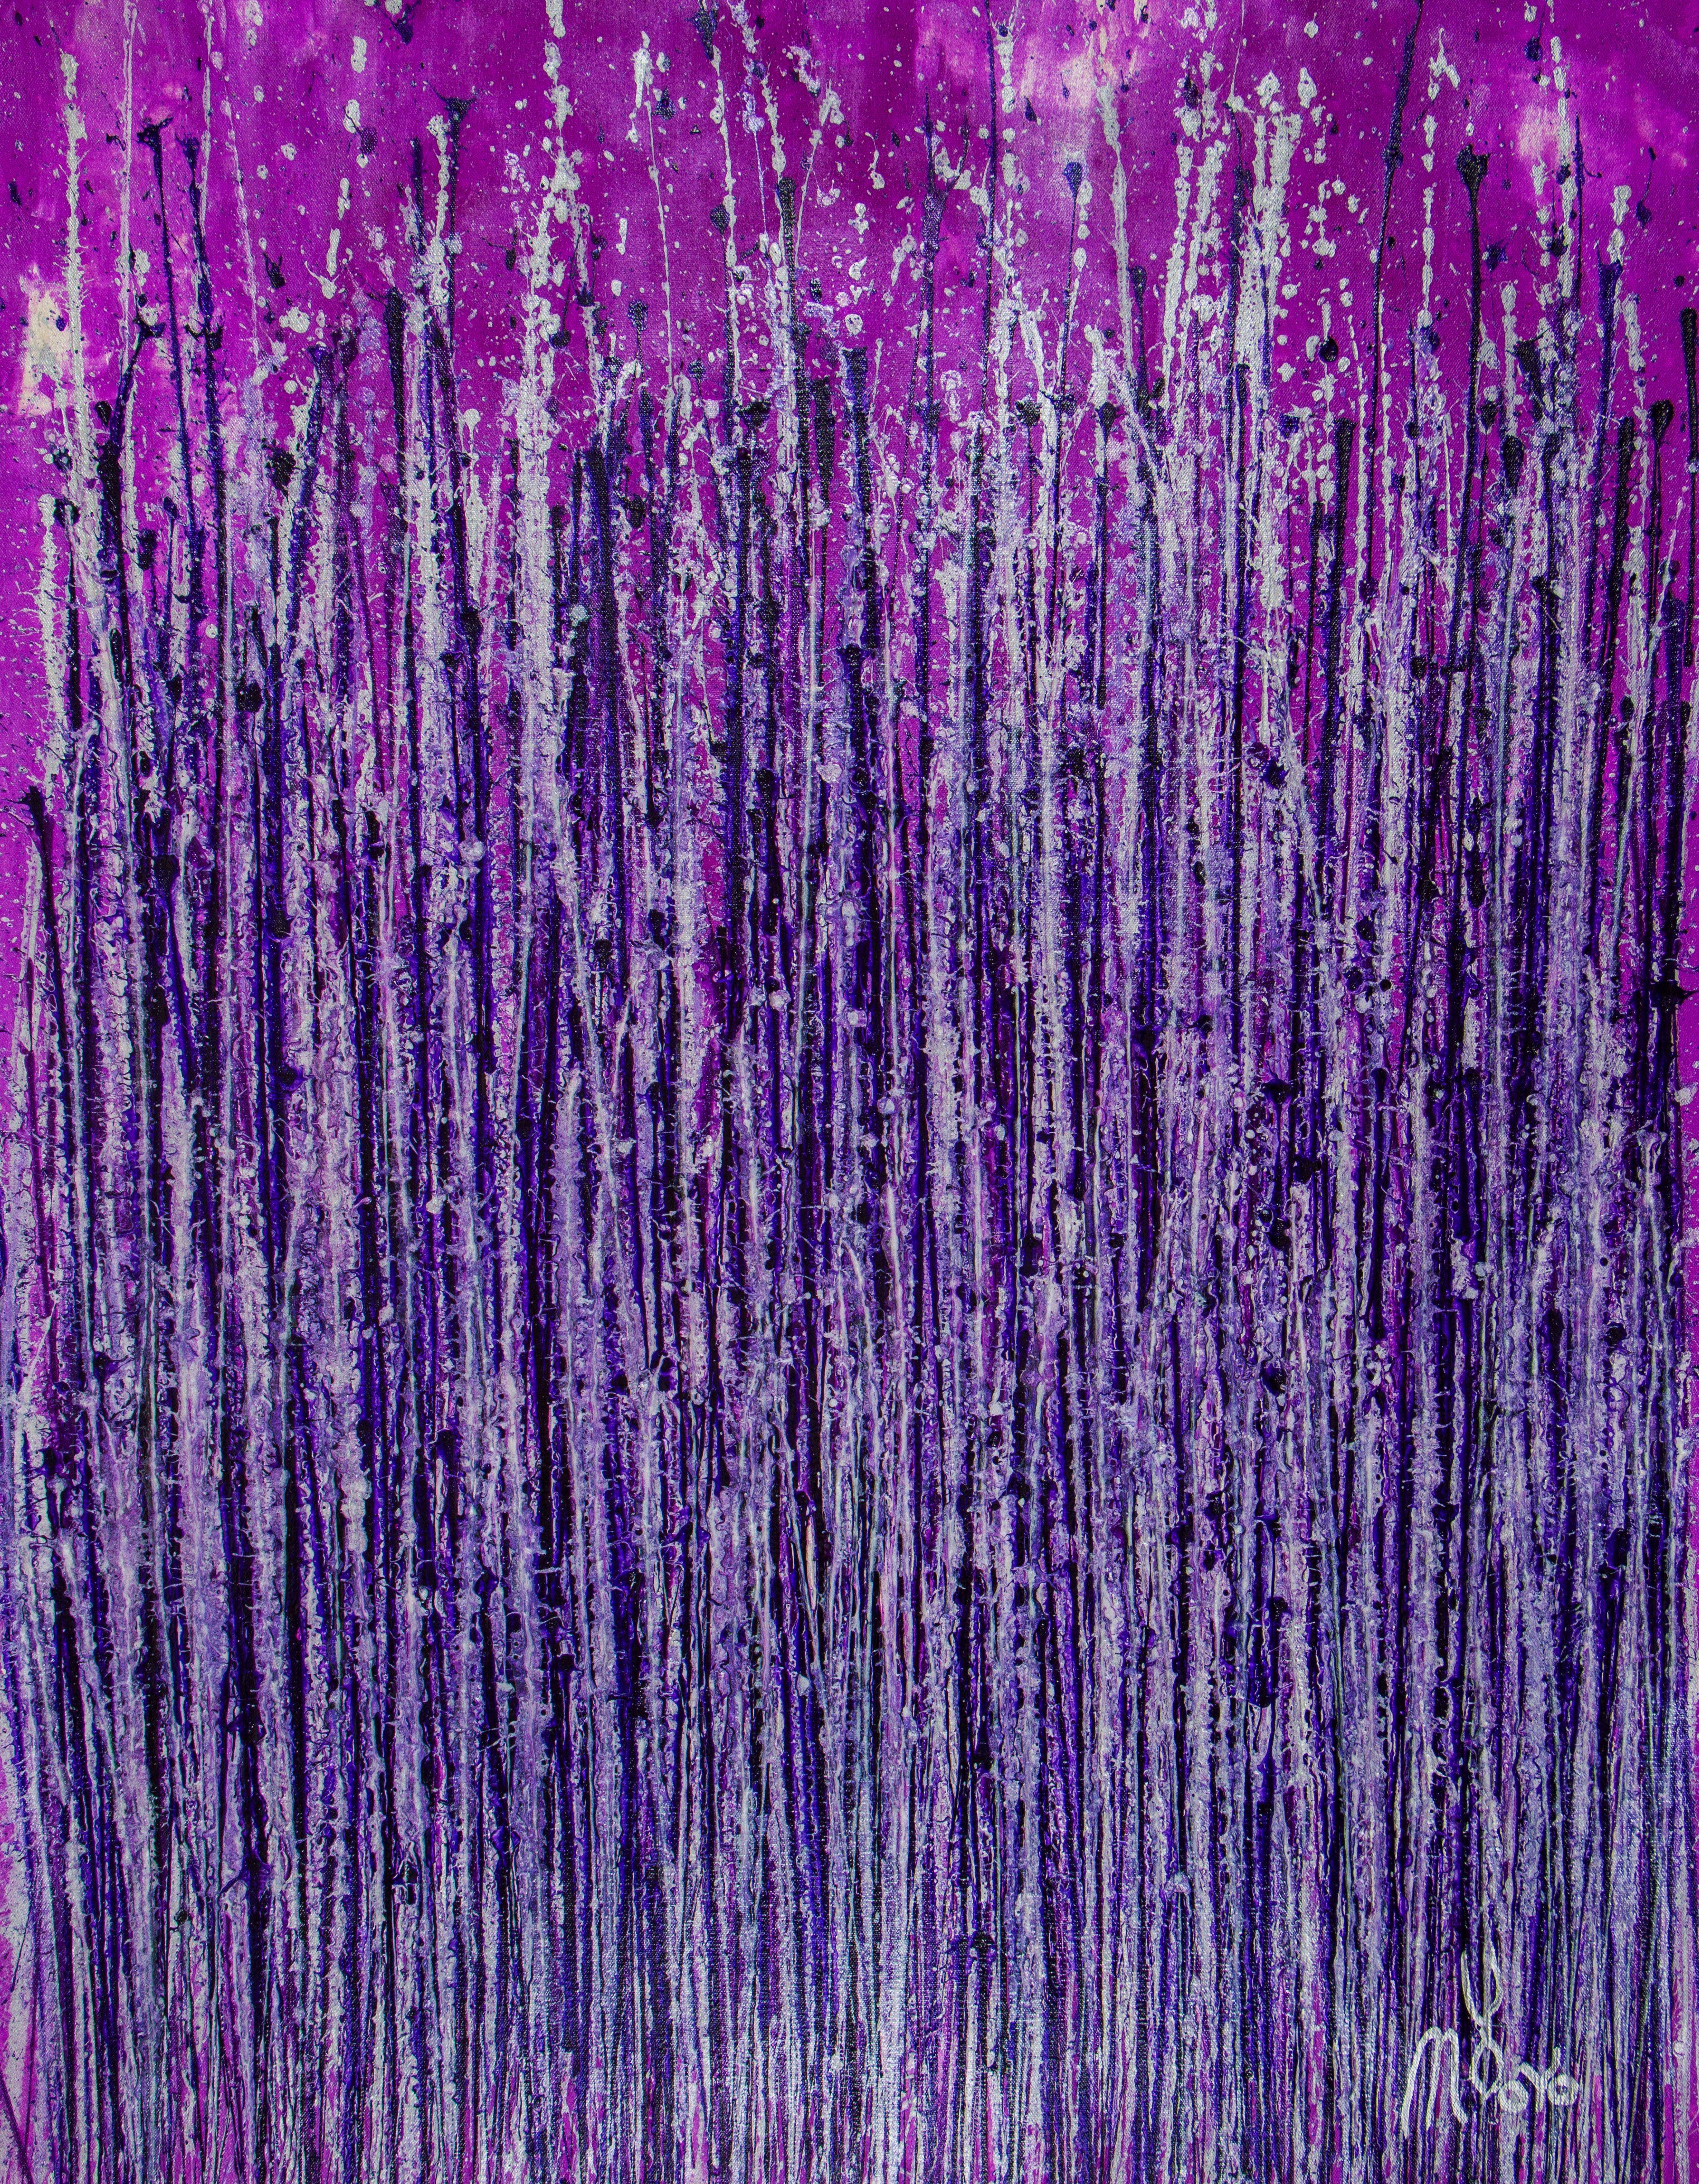 Spektra in violetter Farbe, Gemälde, Acryl auf Leinwand – Painting von Nestor Toro